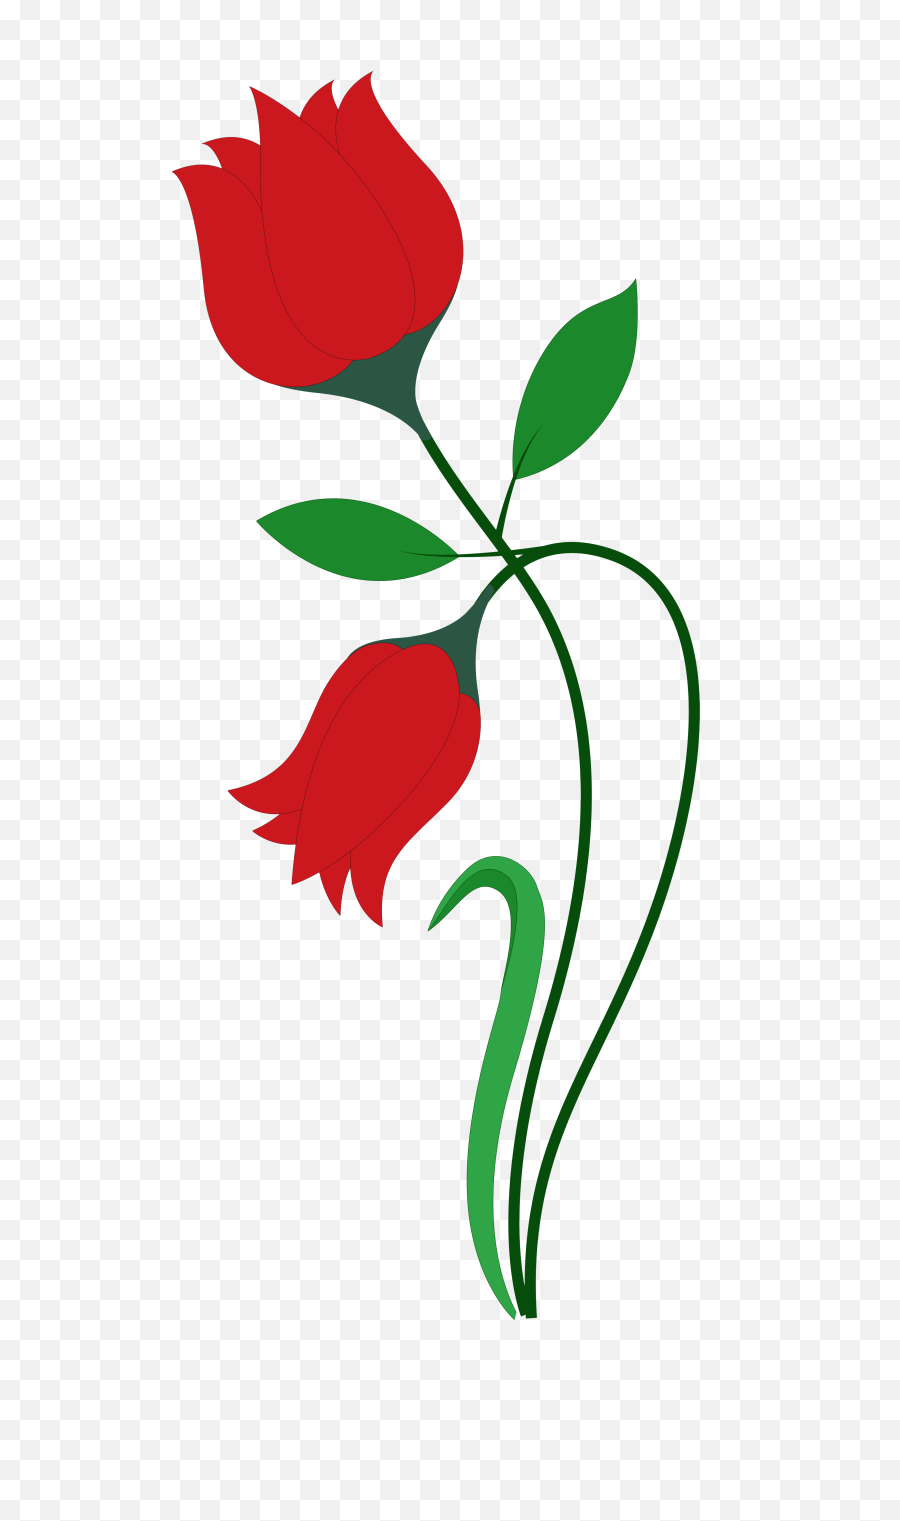 Rose Flower Vector Png Image - Rose Flower Design Art,Rose Flower Png